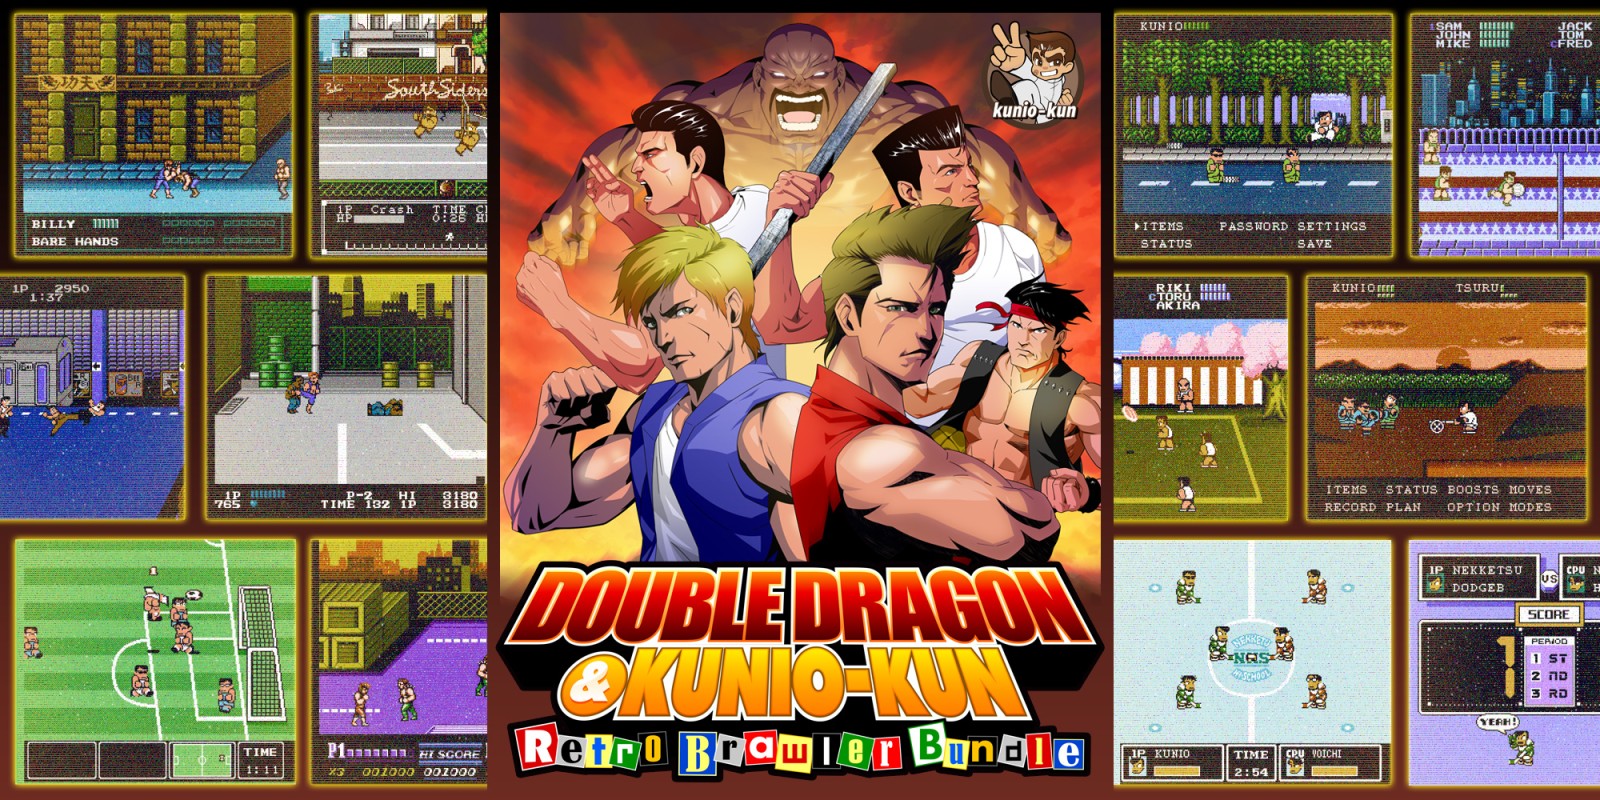 Double Dragon & Kunio-Kun Retro Brawler Bundle logo